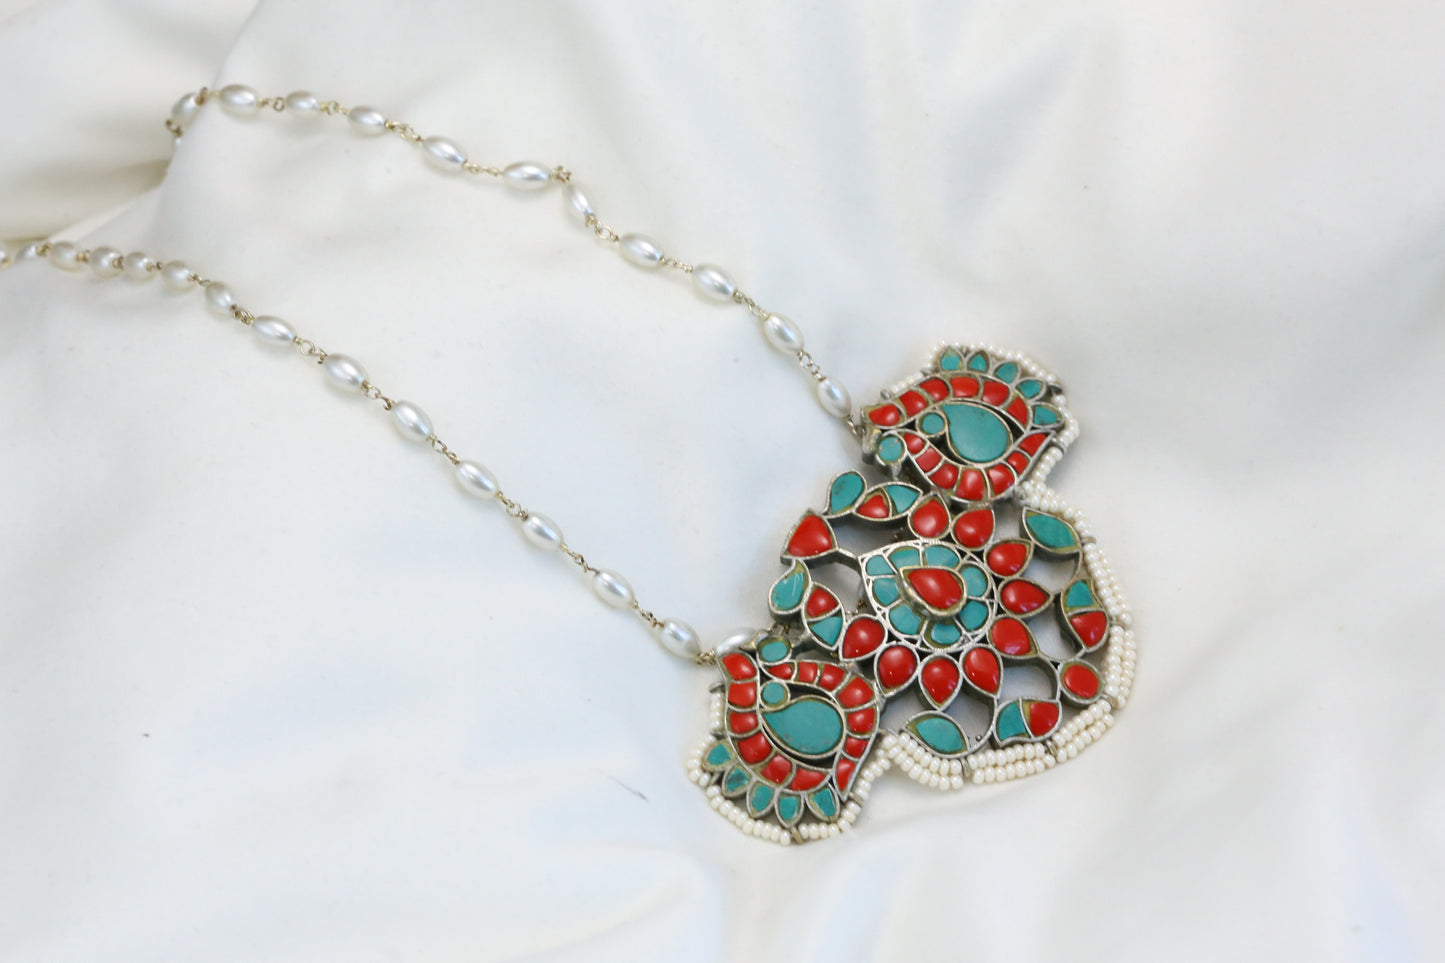 Jadau Kundan Silver Finish Necklace - Coral Turquoise